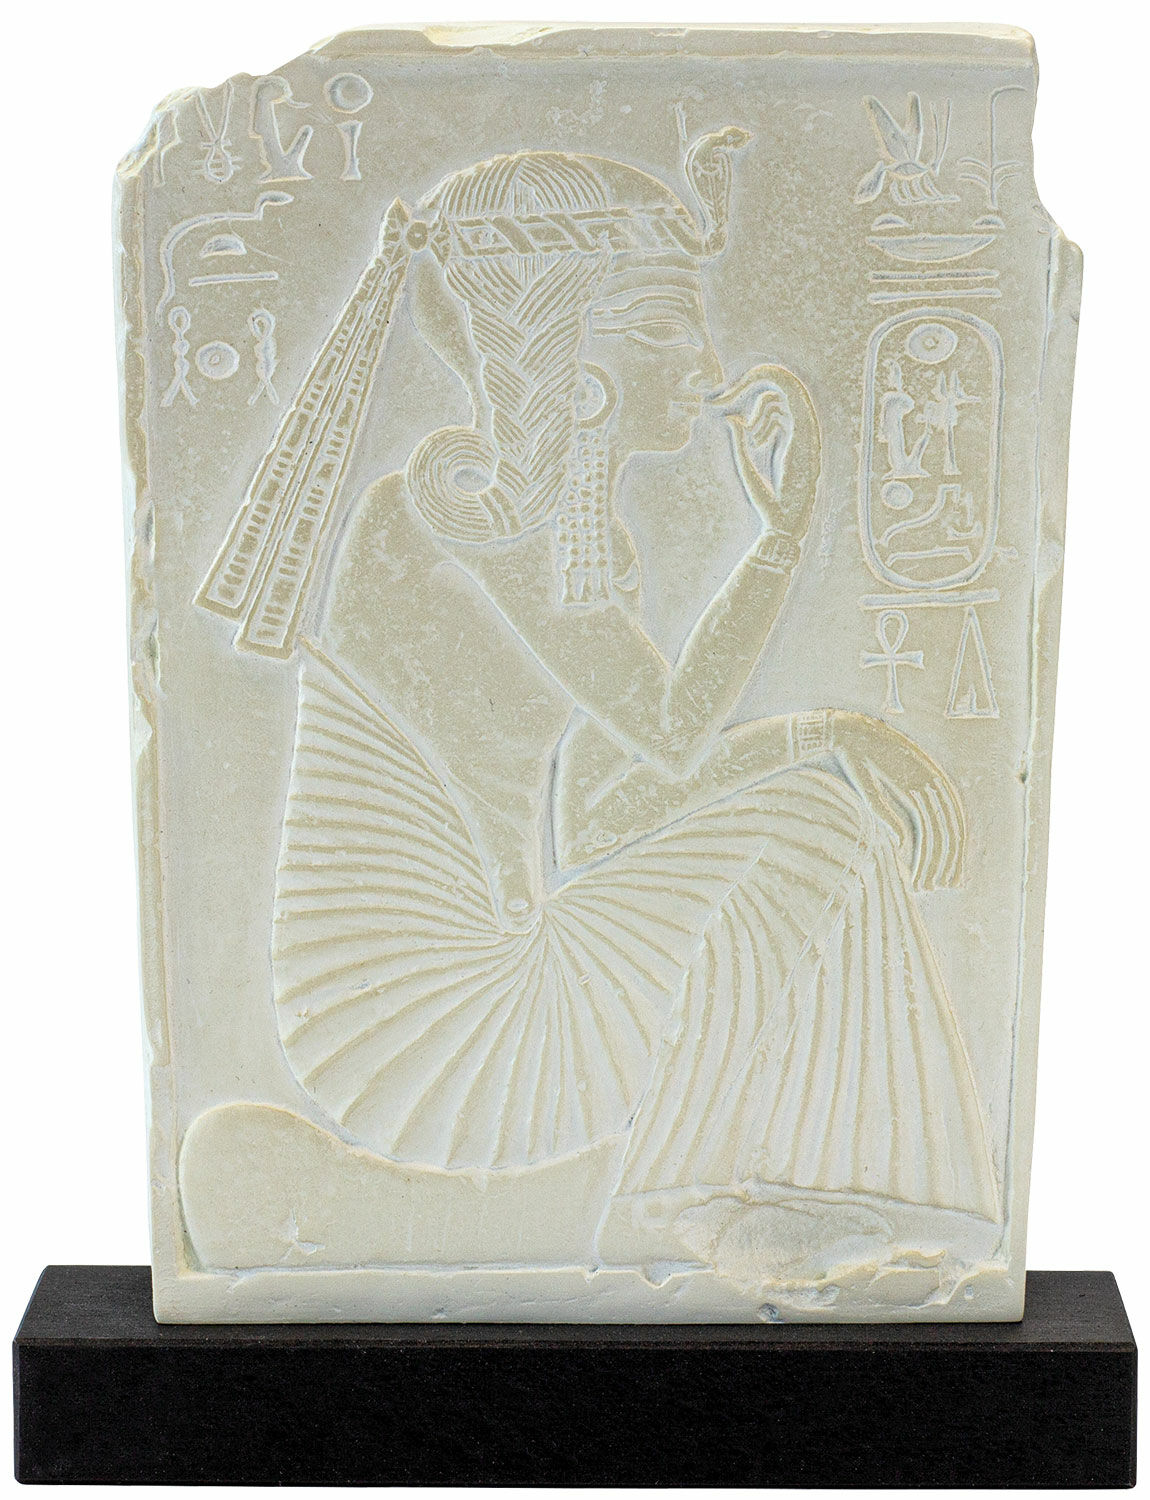 Reliefskulptur "Ramses II som kungabarn", gjuten